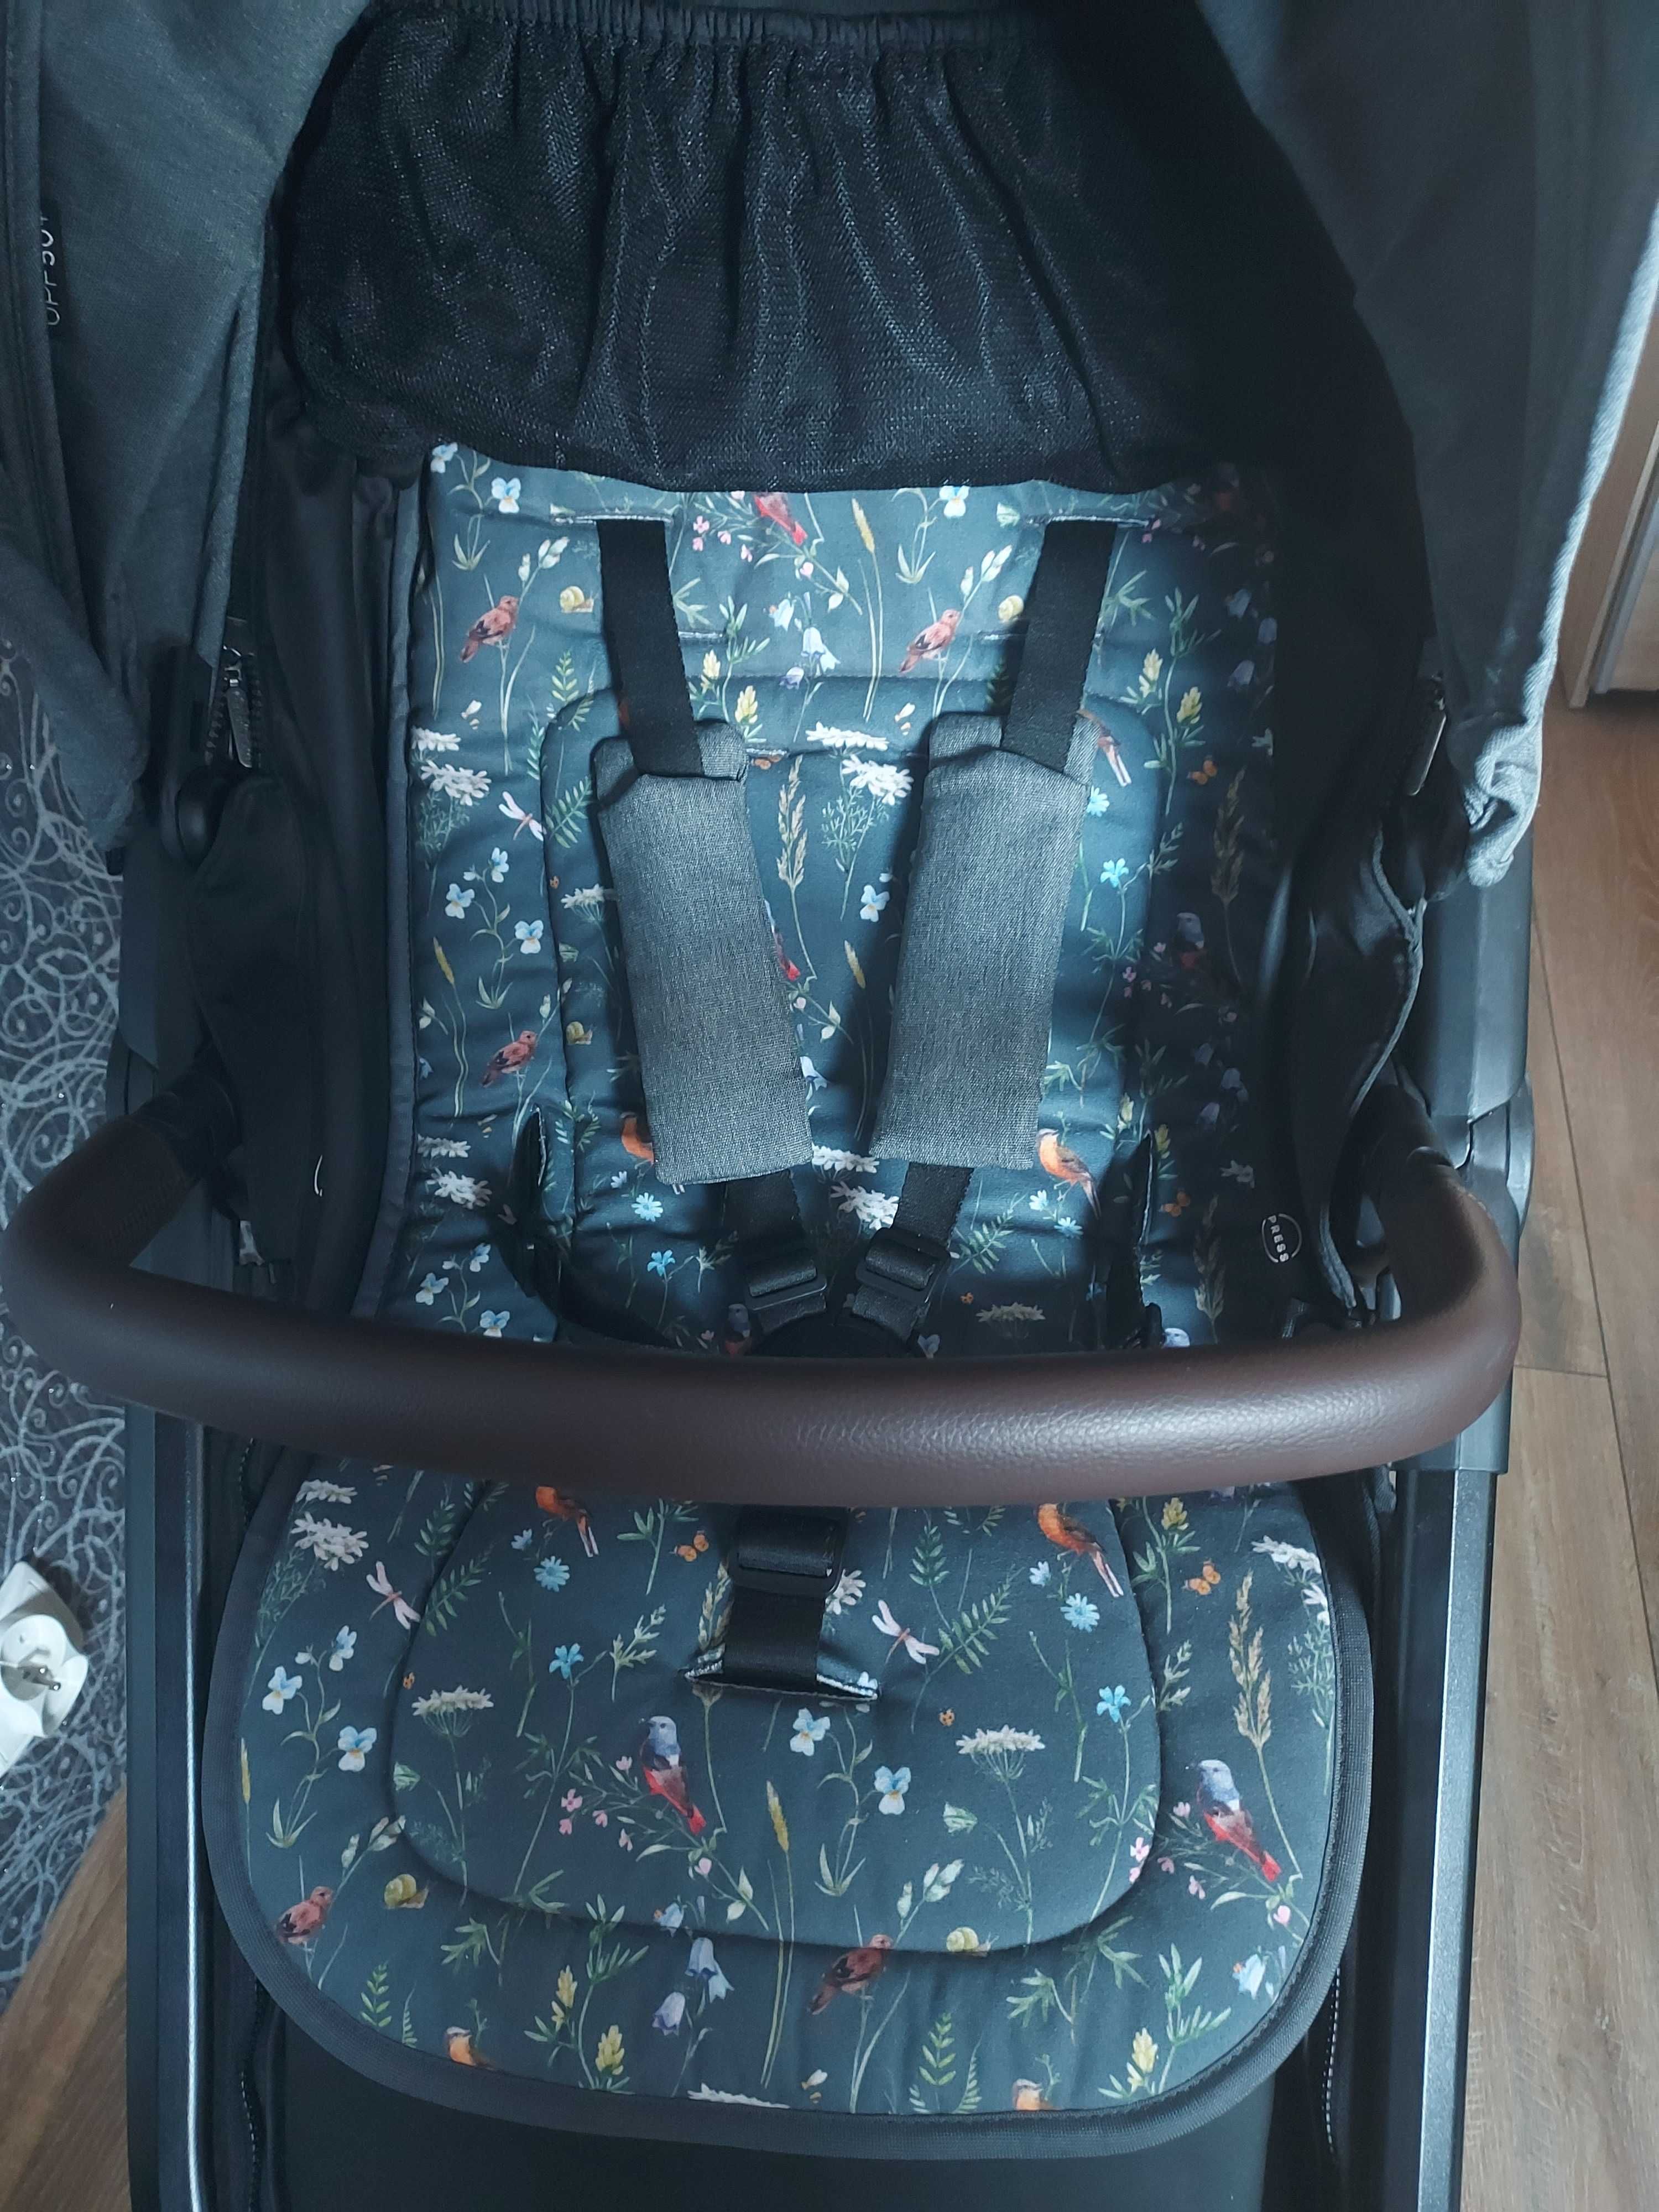 Baby Design Coco wózek spacerowy z miękką wkładką + gratisy